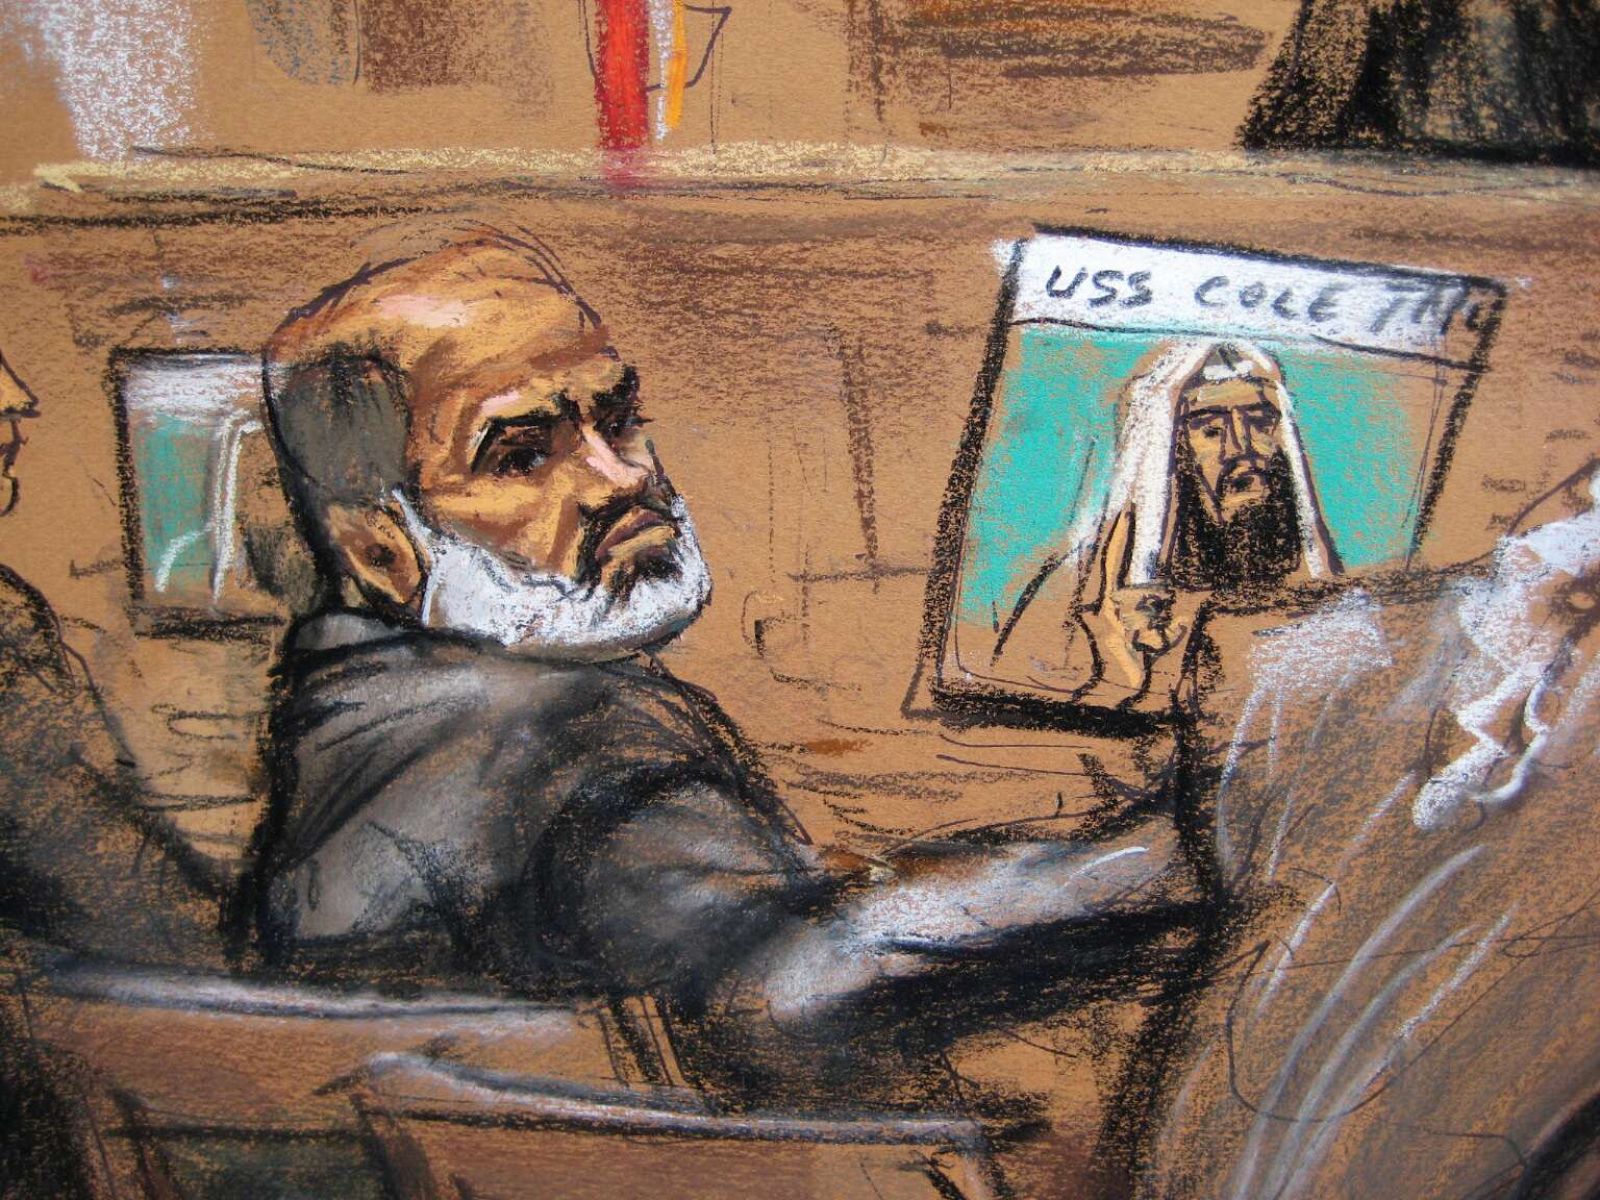 Dibujo facilitado por la justicia estadounidense de una sesión del proceso a Abu Ghaith por los atentados del 11-S.